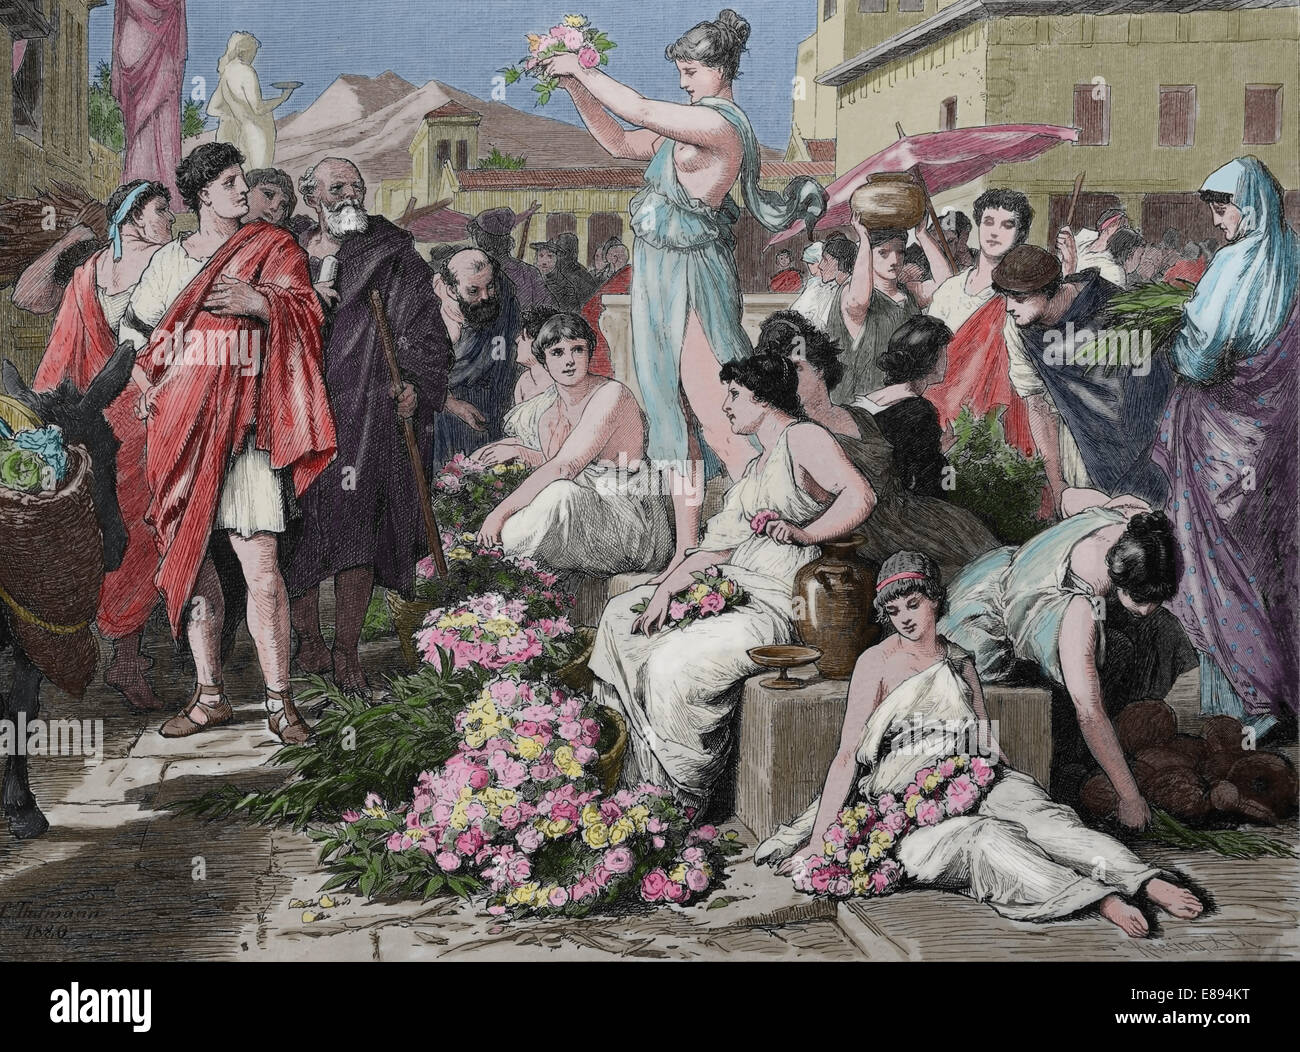 La antigua Grecia. Atenas. Mercado de flores. 700-150 A.C. Grabado por Knesing. Posteriormente coloración. Foto de stock